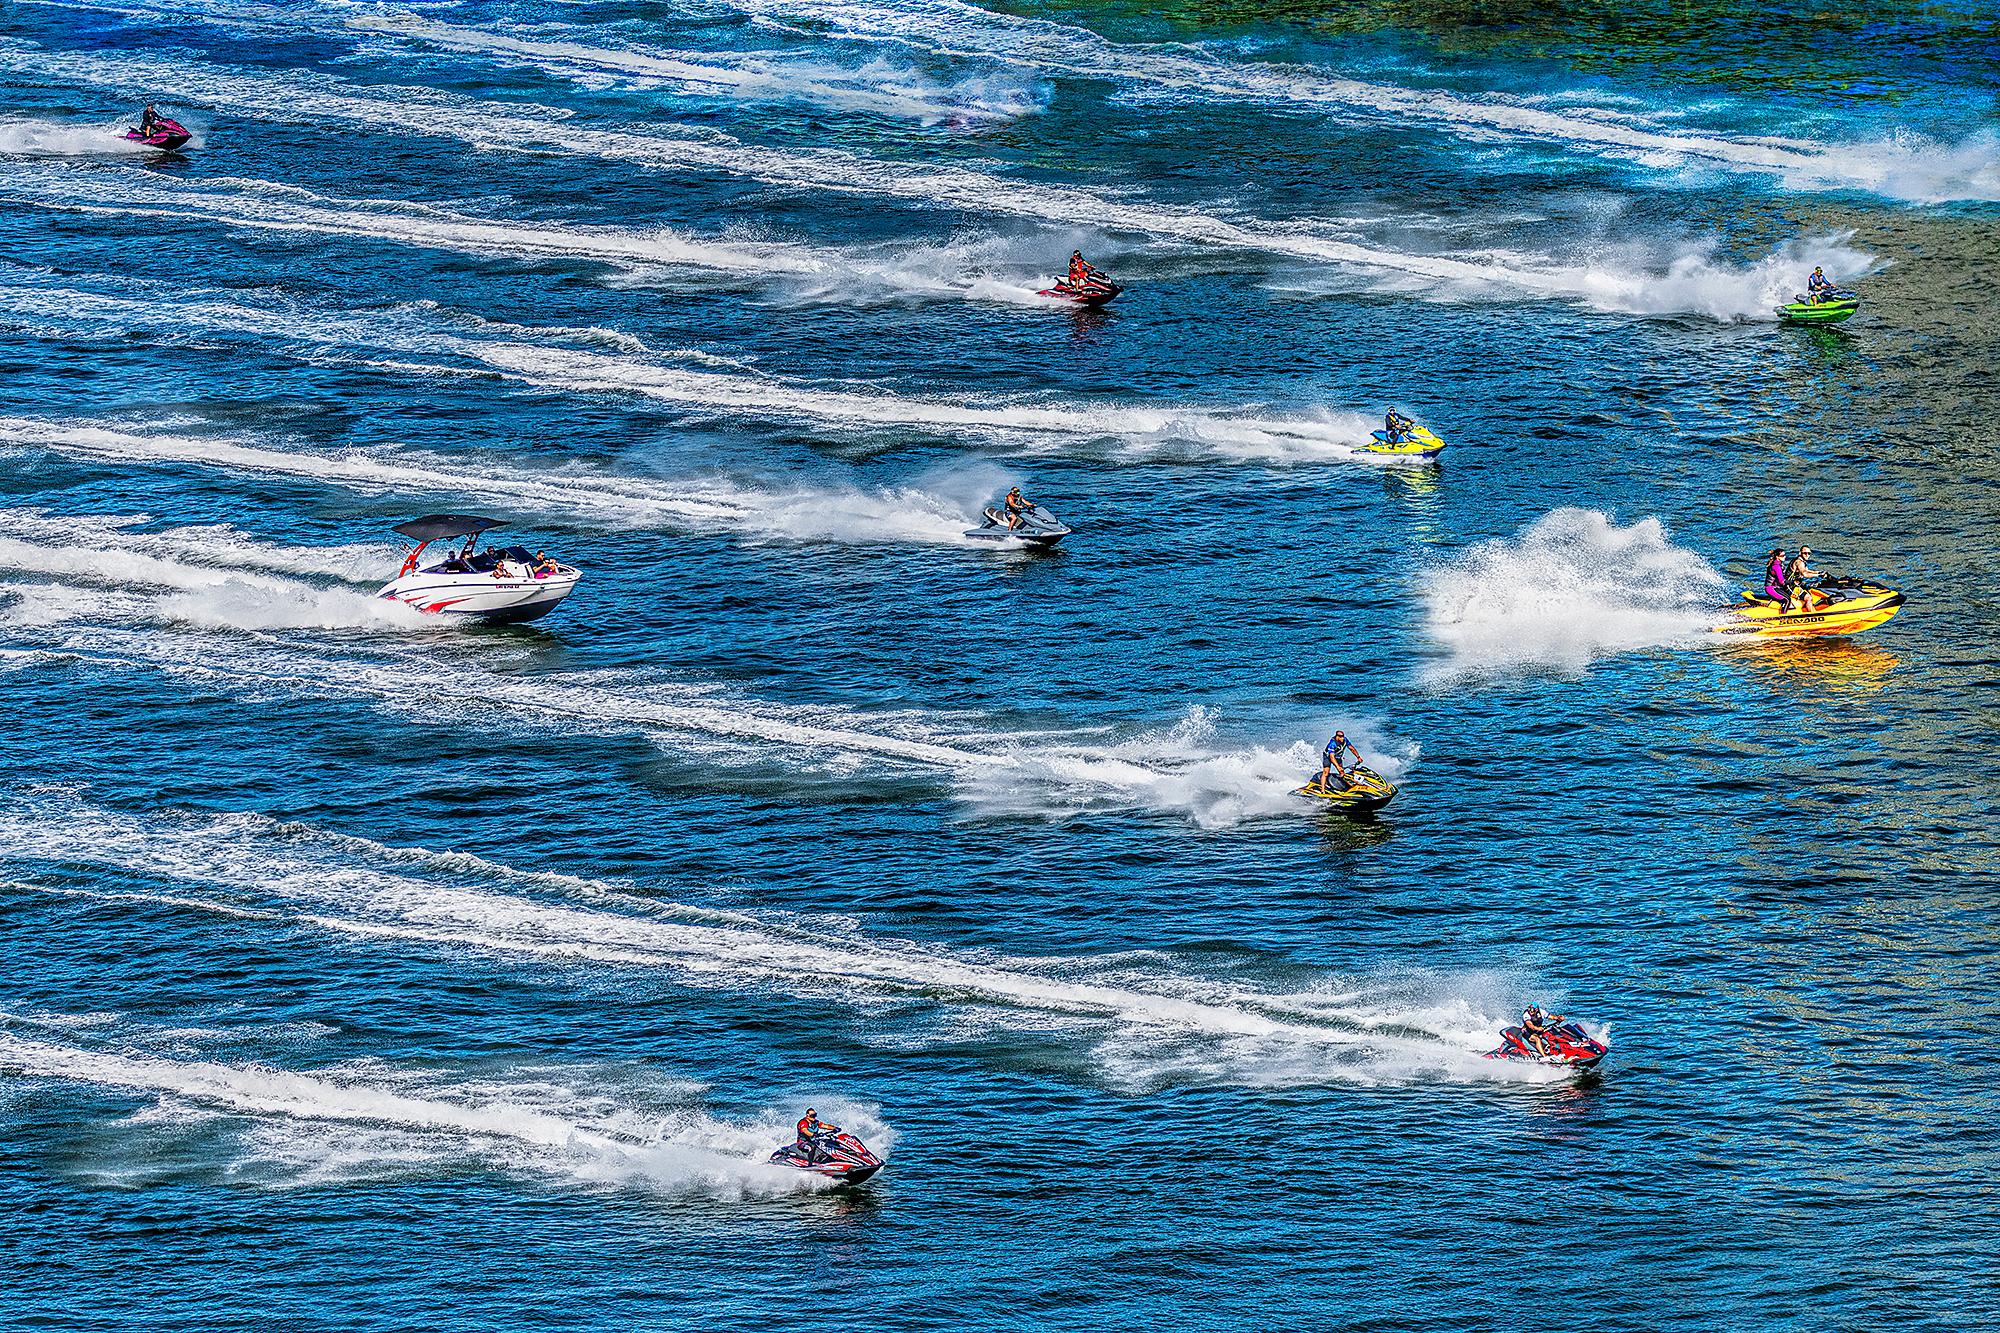 Jet Ski-Wassersport-Actionswellenrennen in blauem Wasser